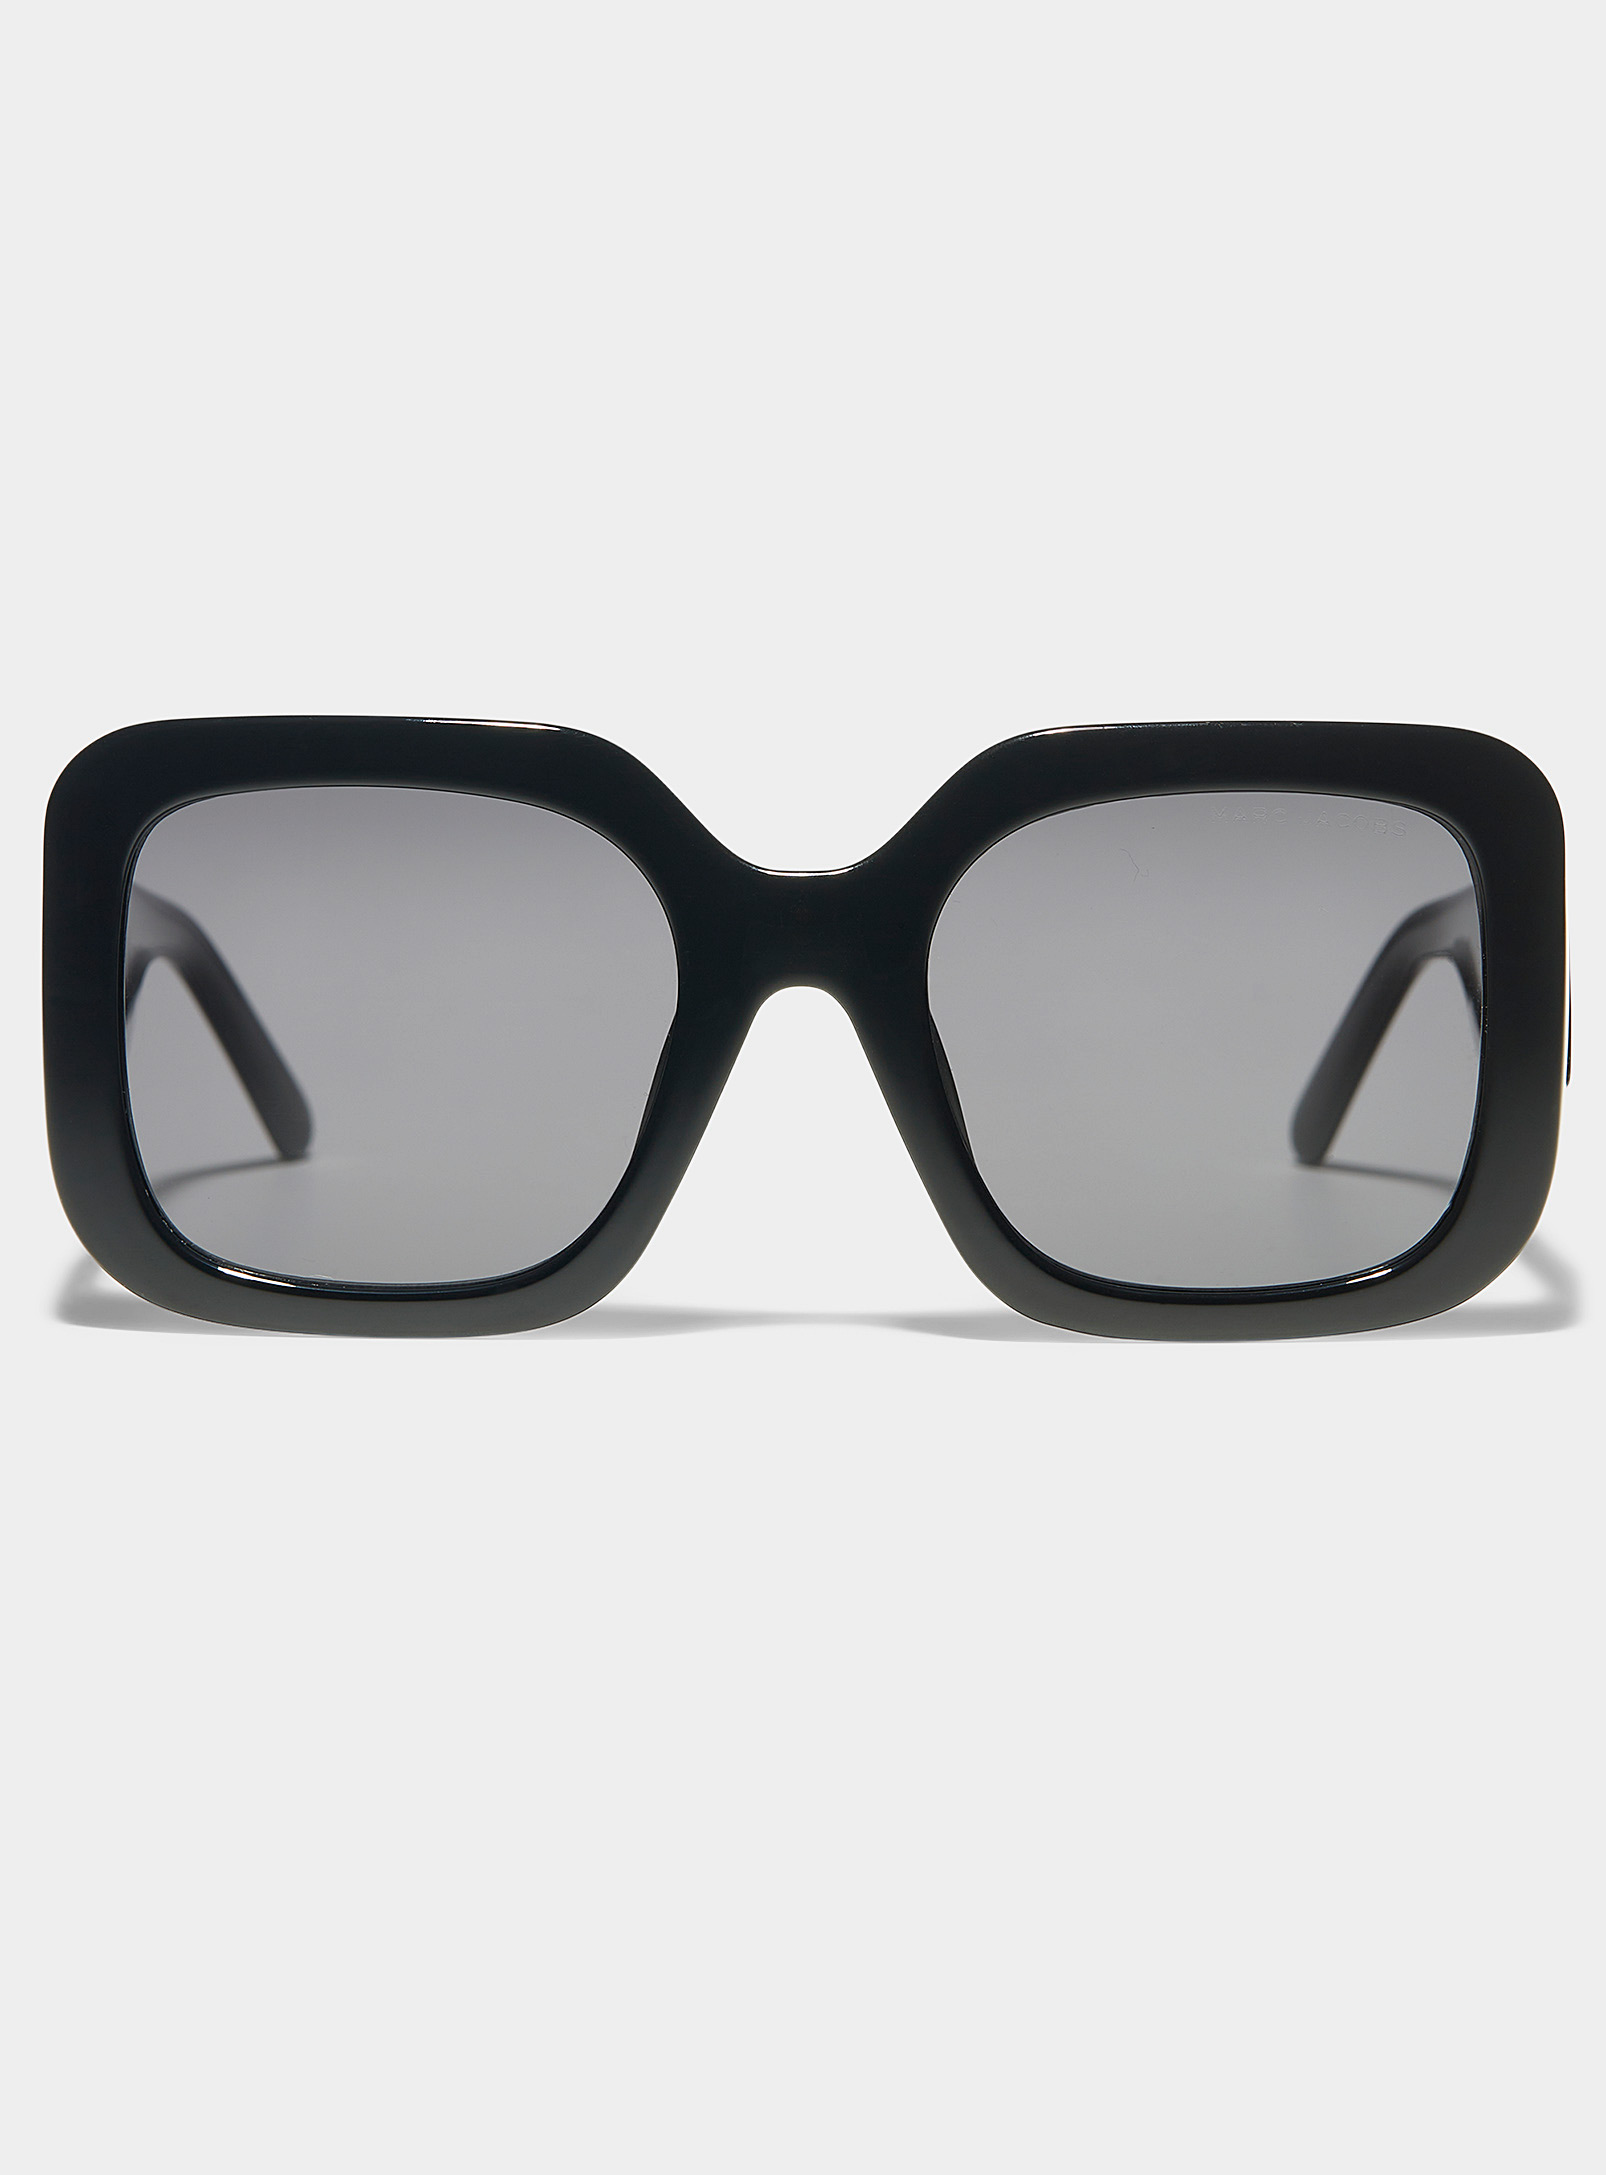 Marc Jacobs - Women's Shiny black large square sunglasses